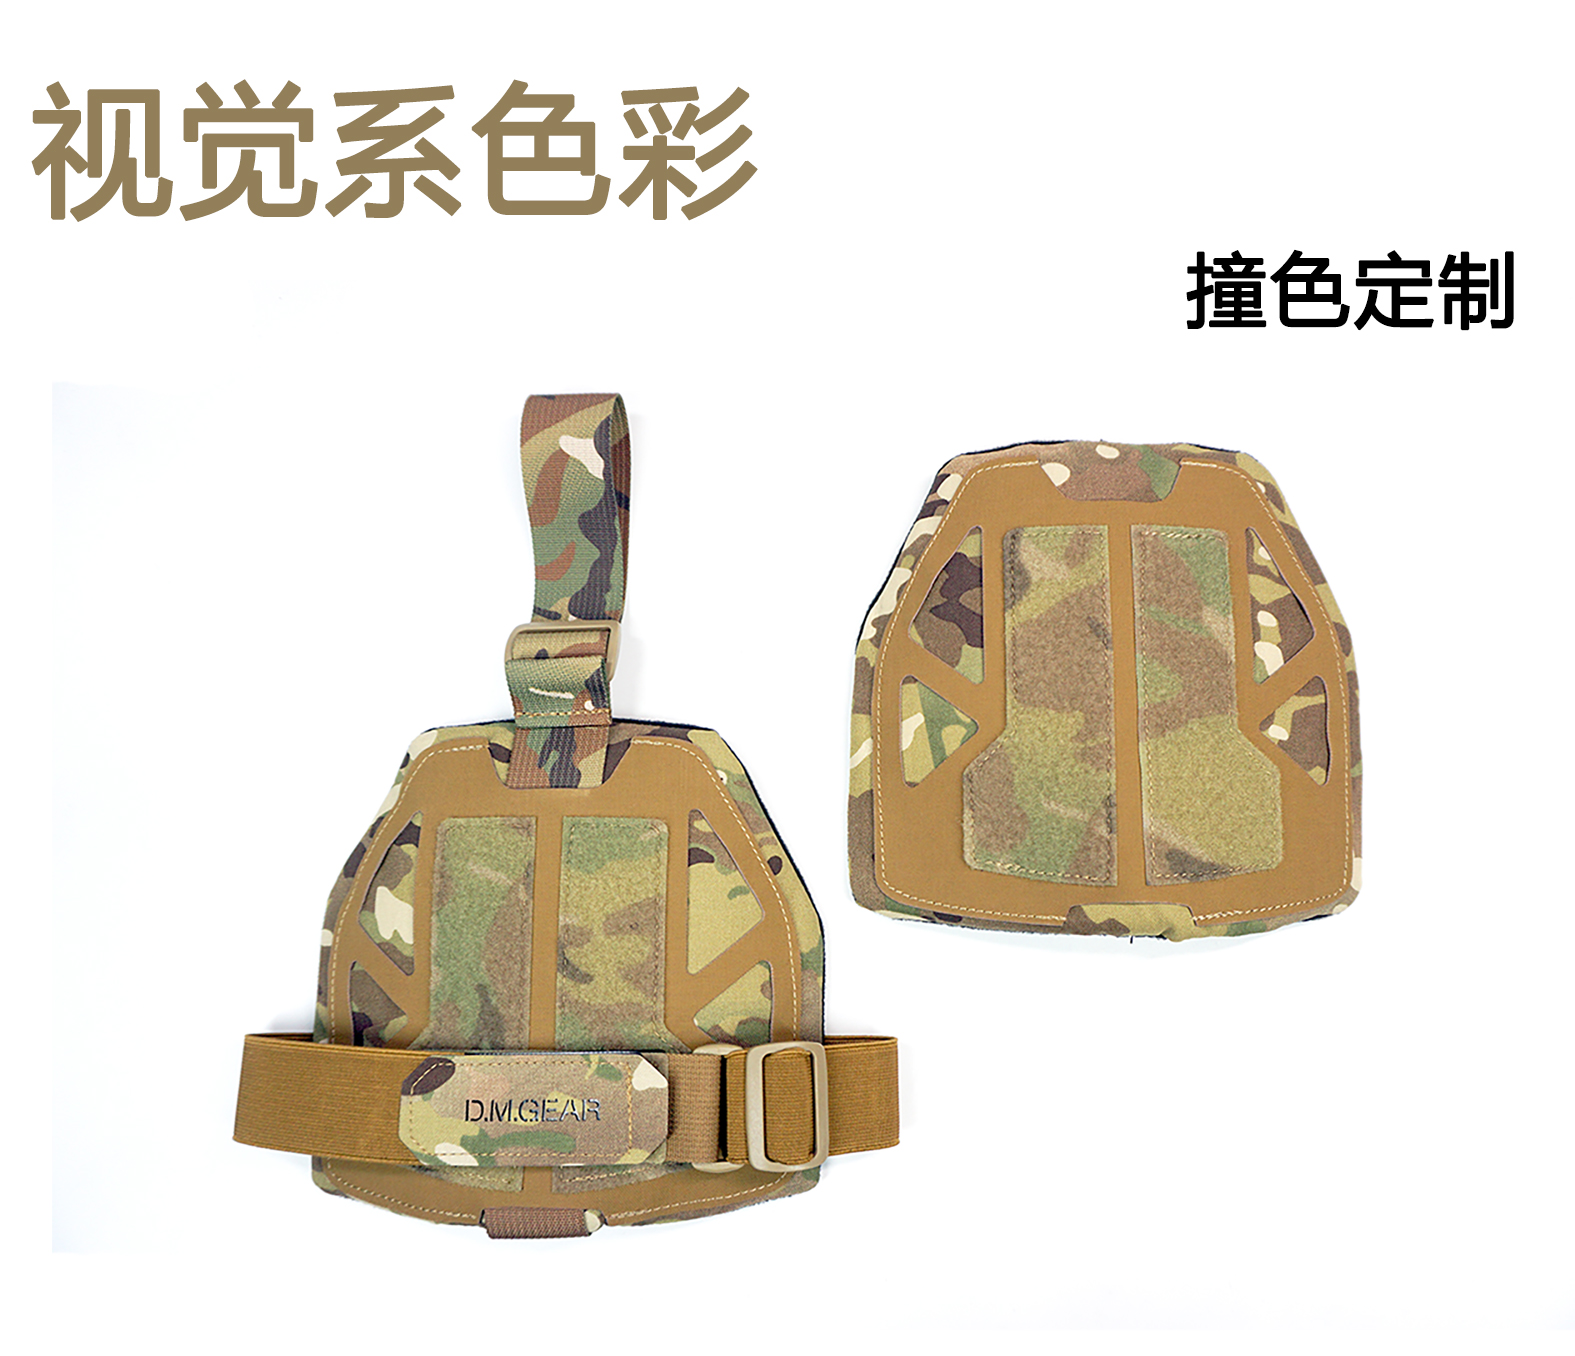 DMgear 钢骨系列-战术背心通用型护肩 肩甲  兼容所有战术背心